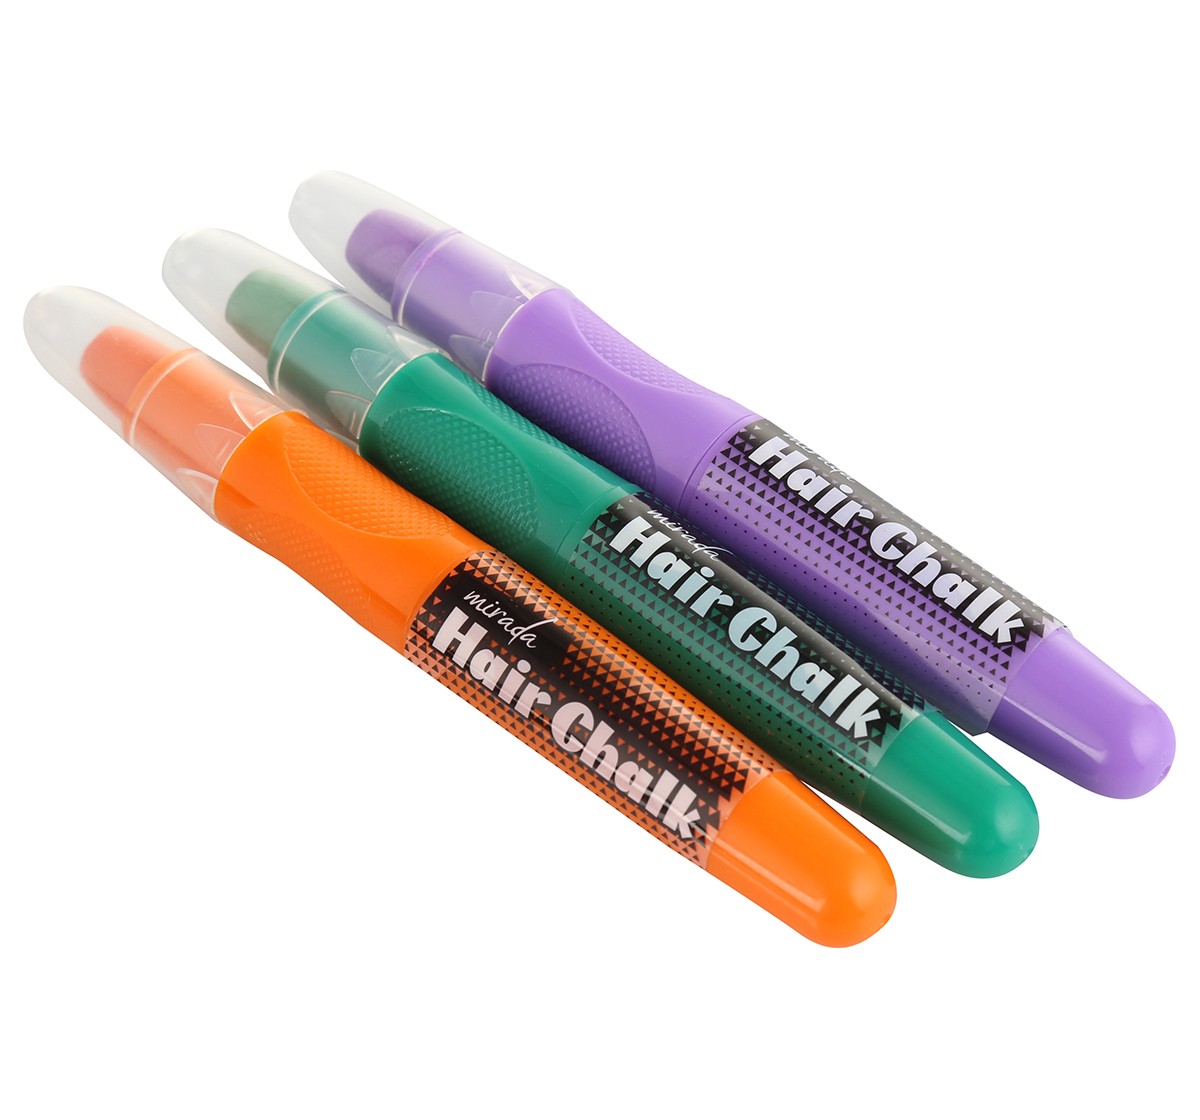 Mirada Hair chalk pen sparkle Multicolor 6Y+